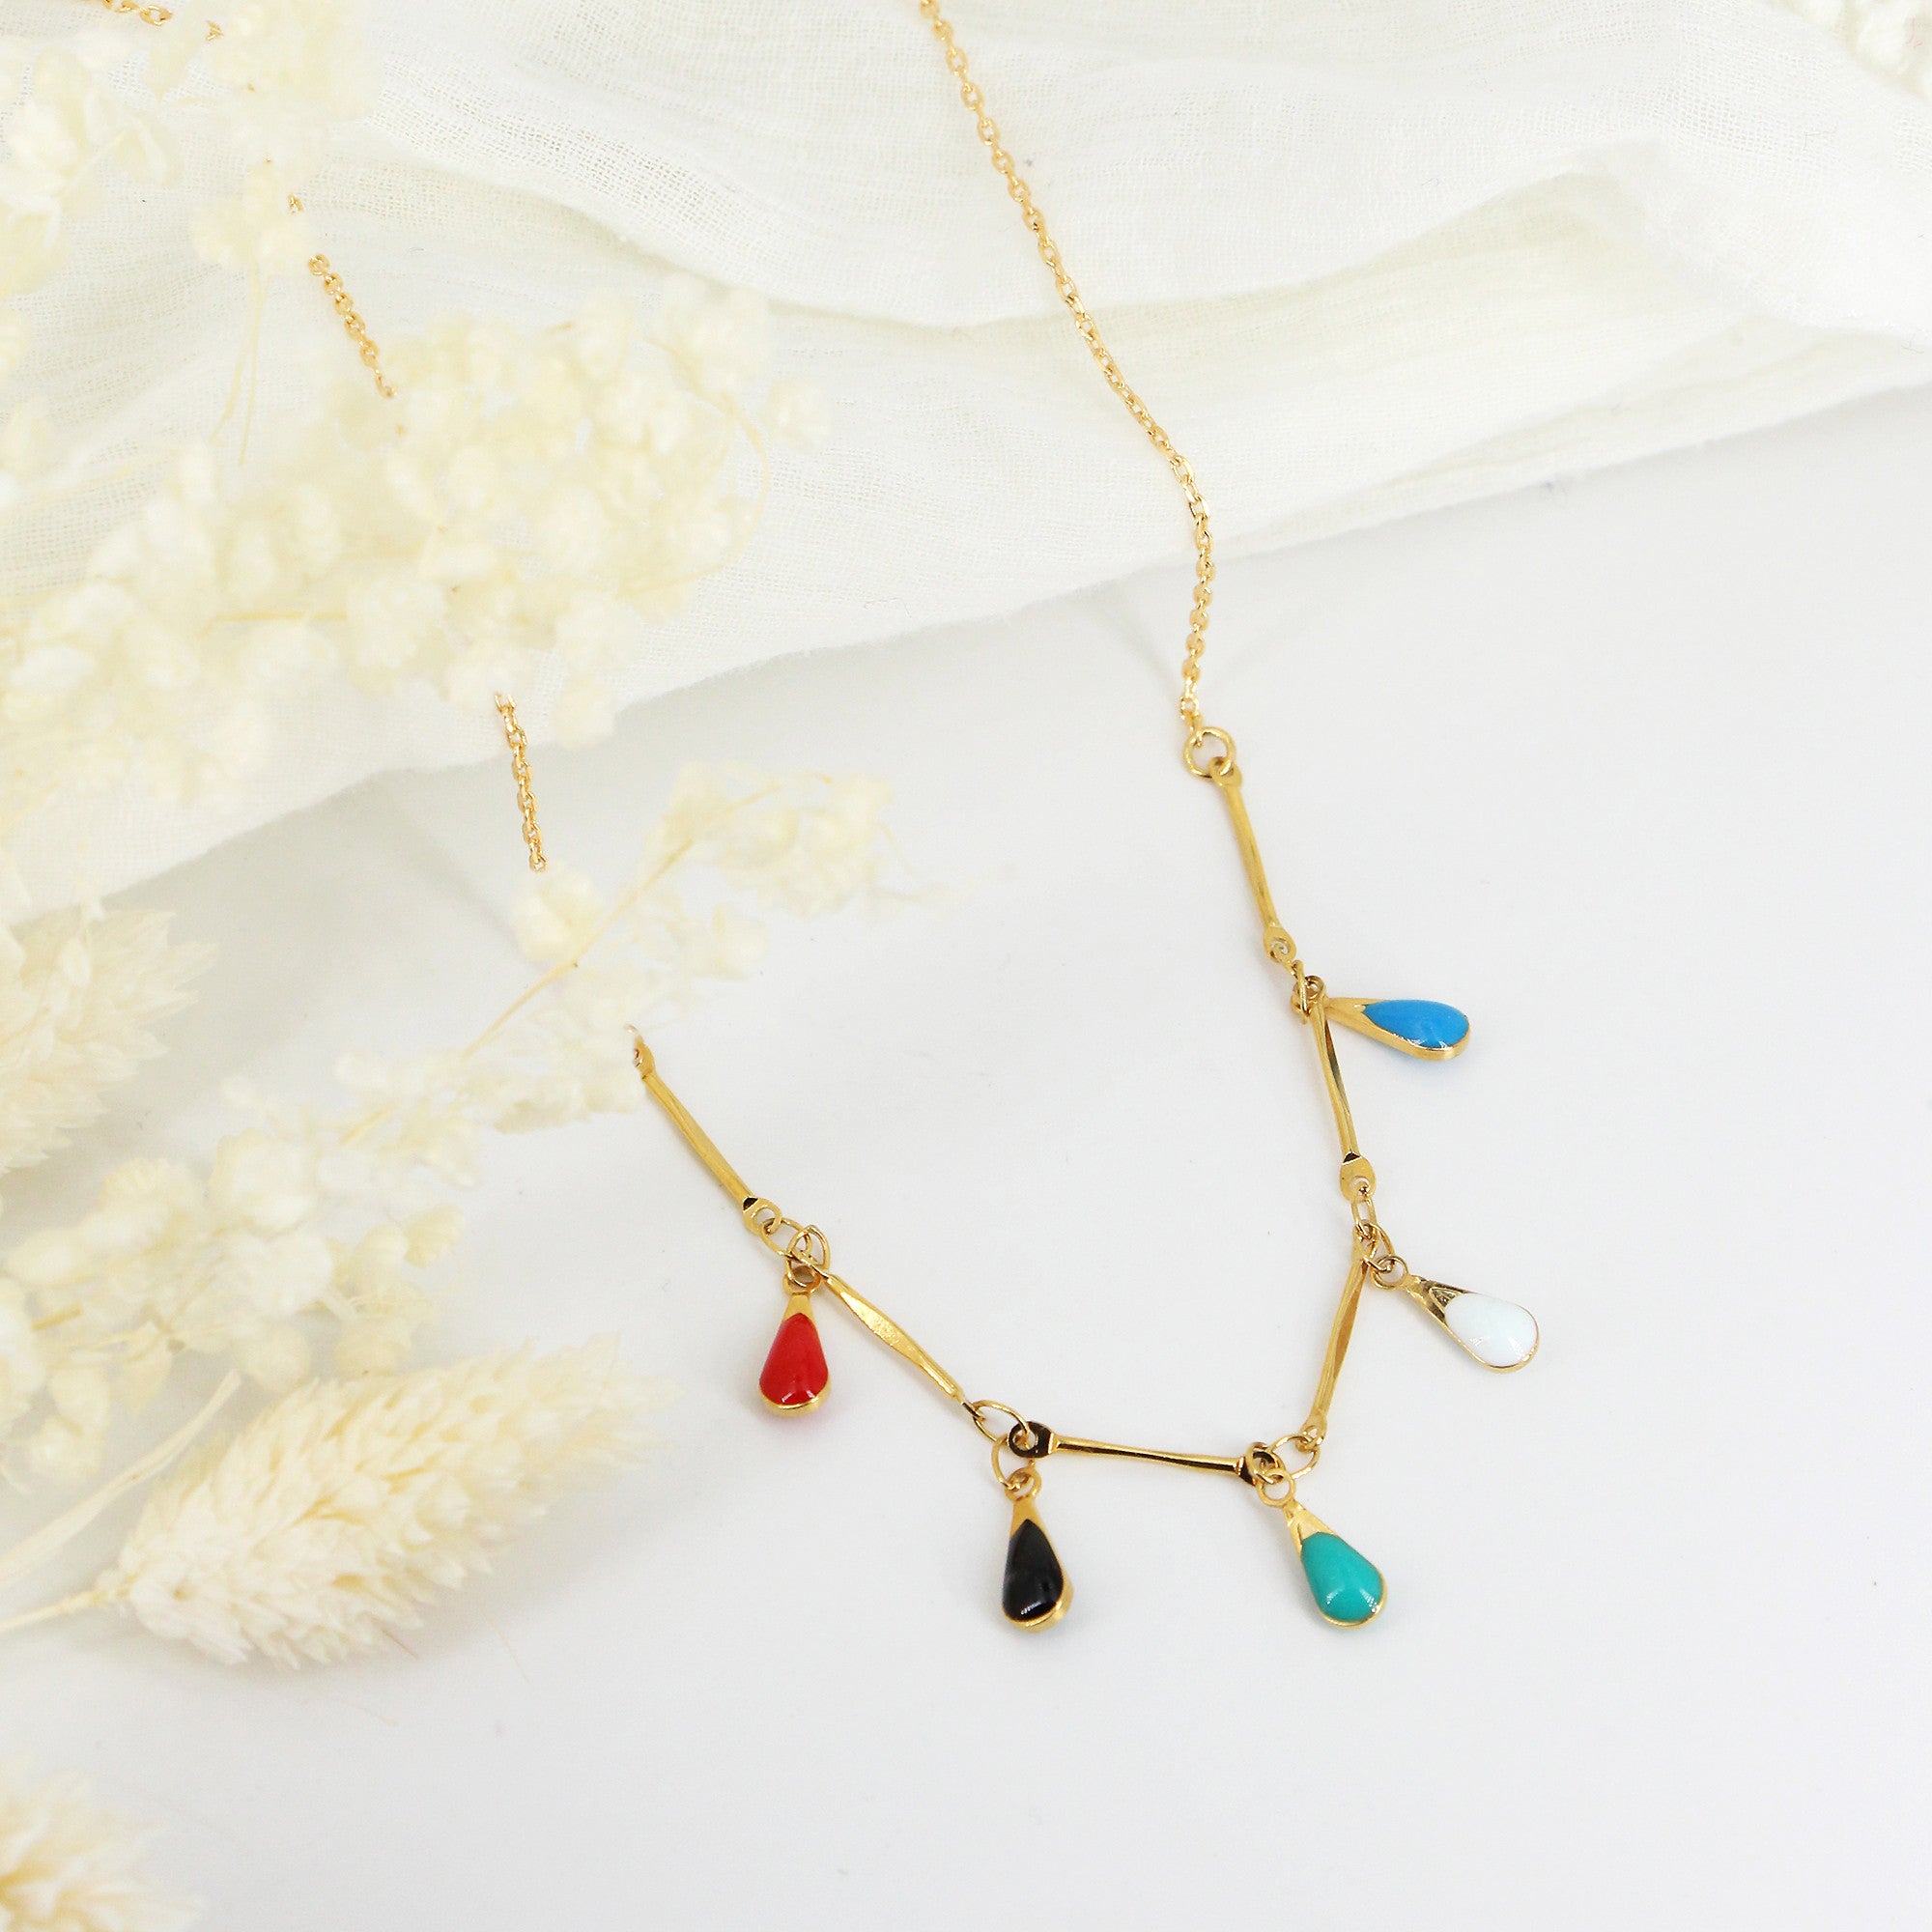 Amalia necklace